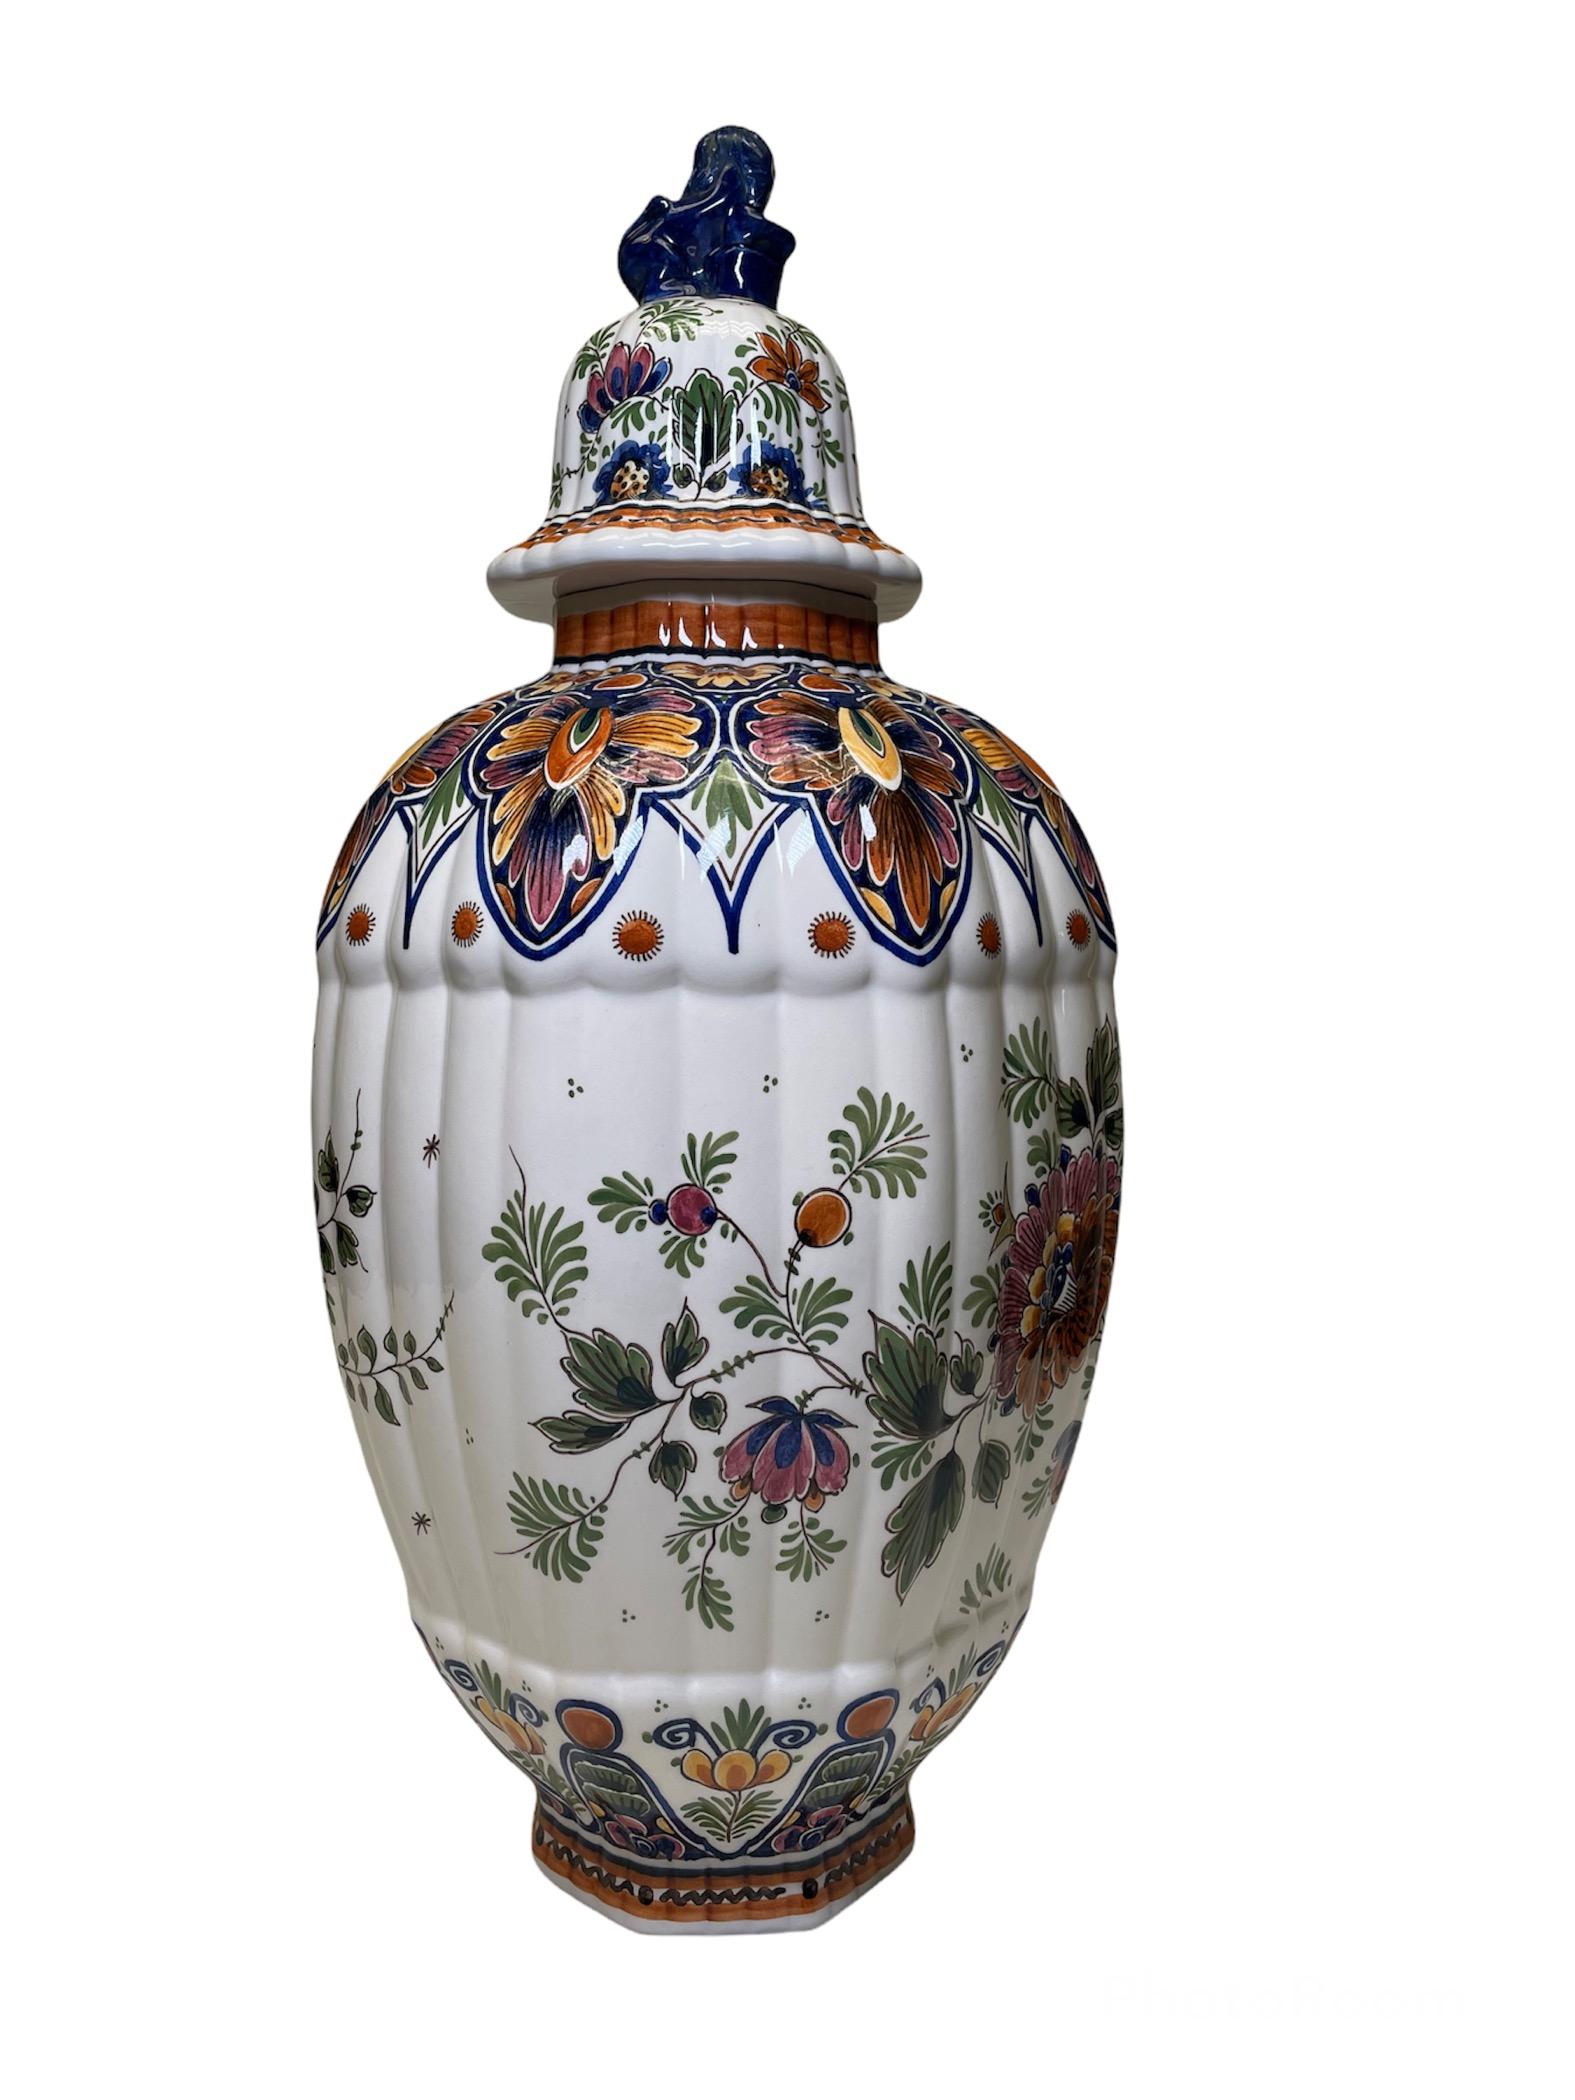 Hand-Painted Delft Hand Painted Porcelain Lidded Urn Vase/Ginger Jar